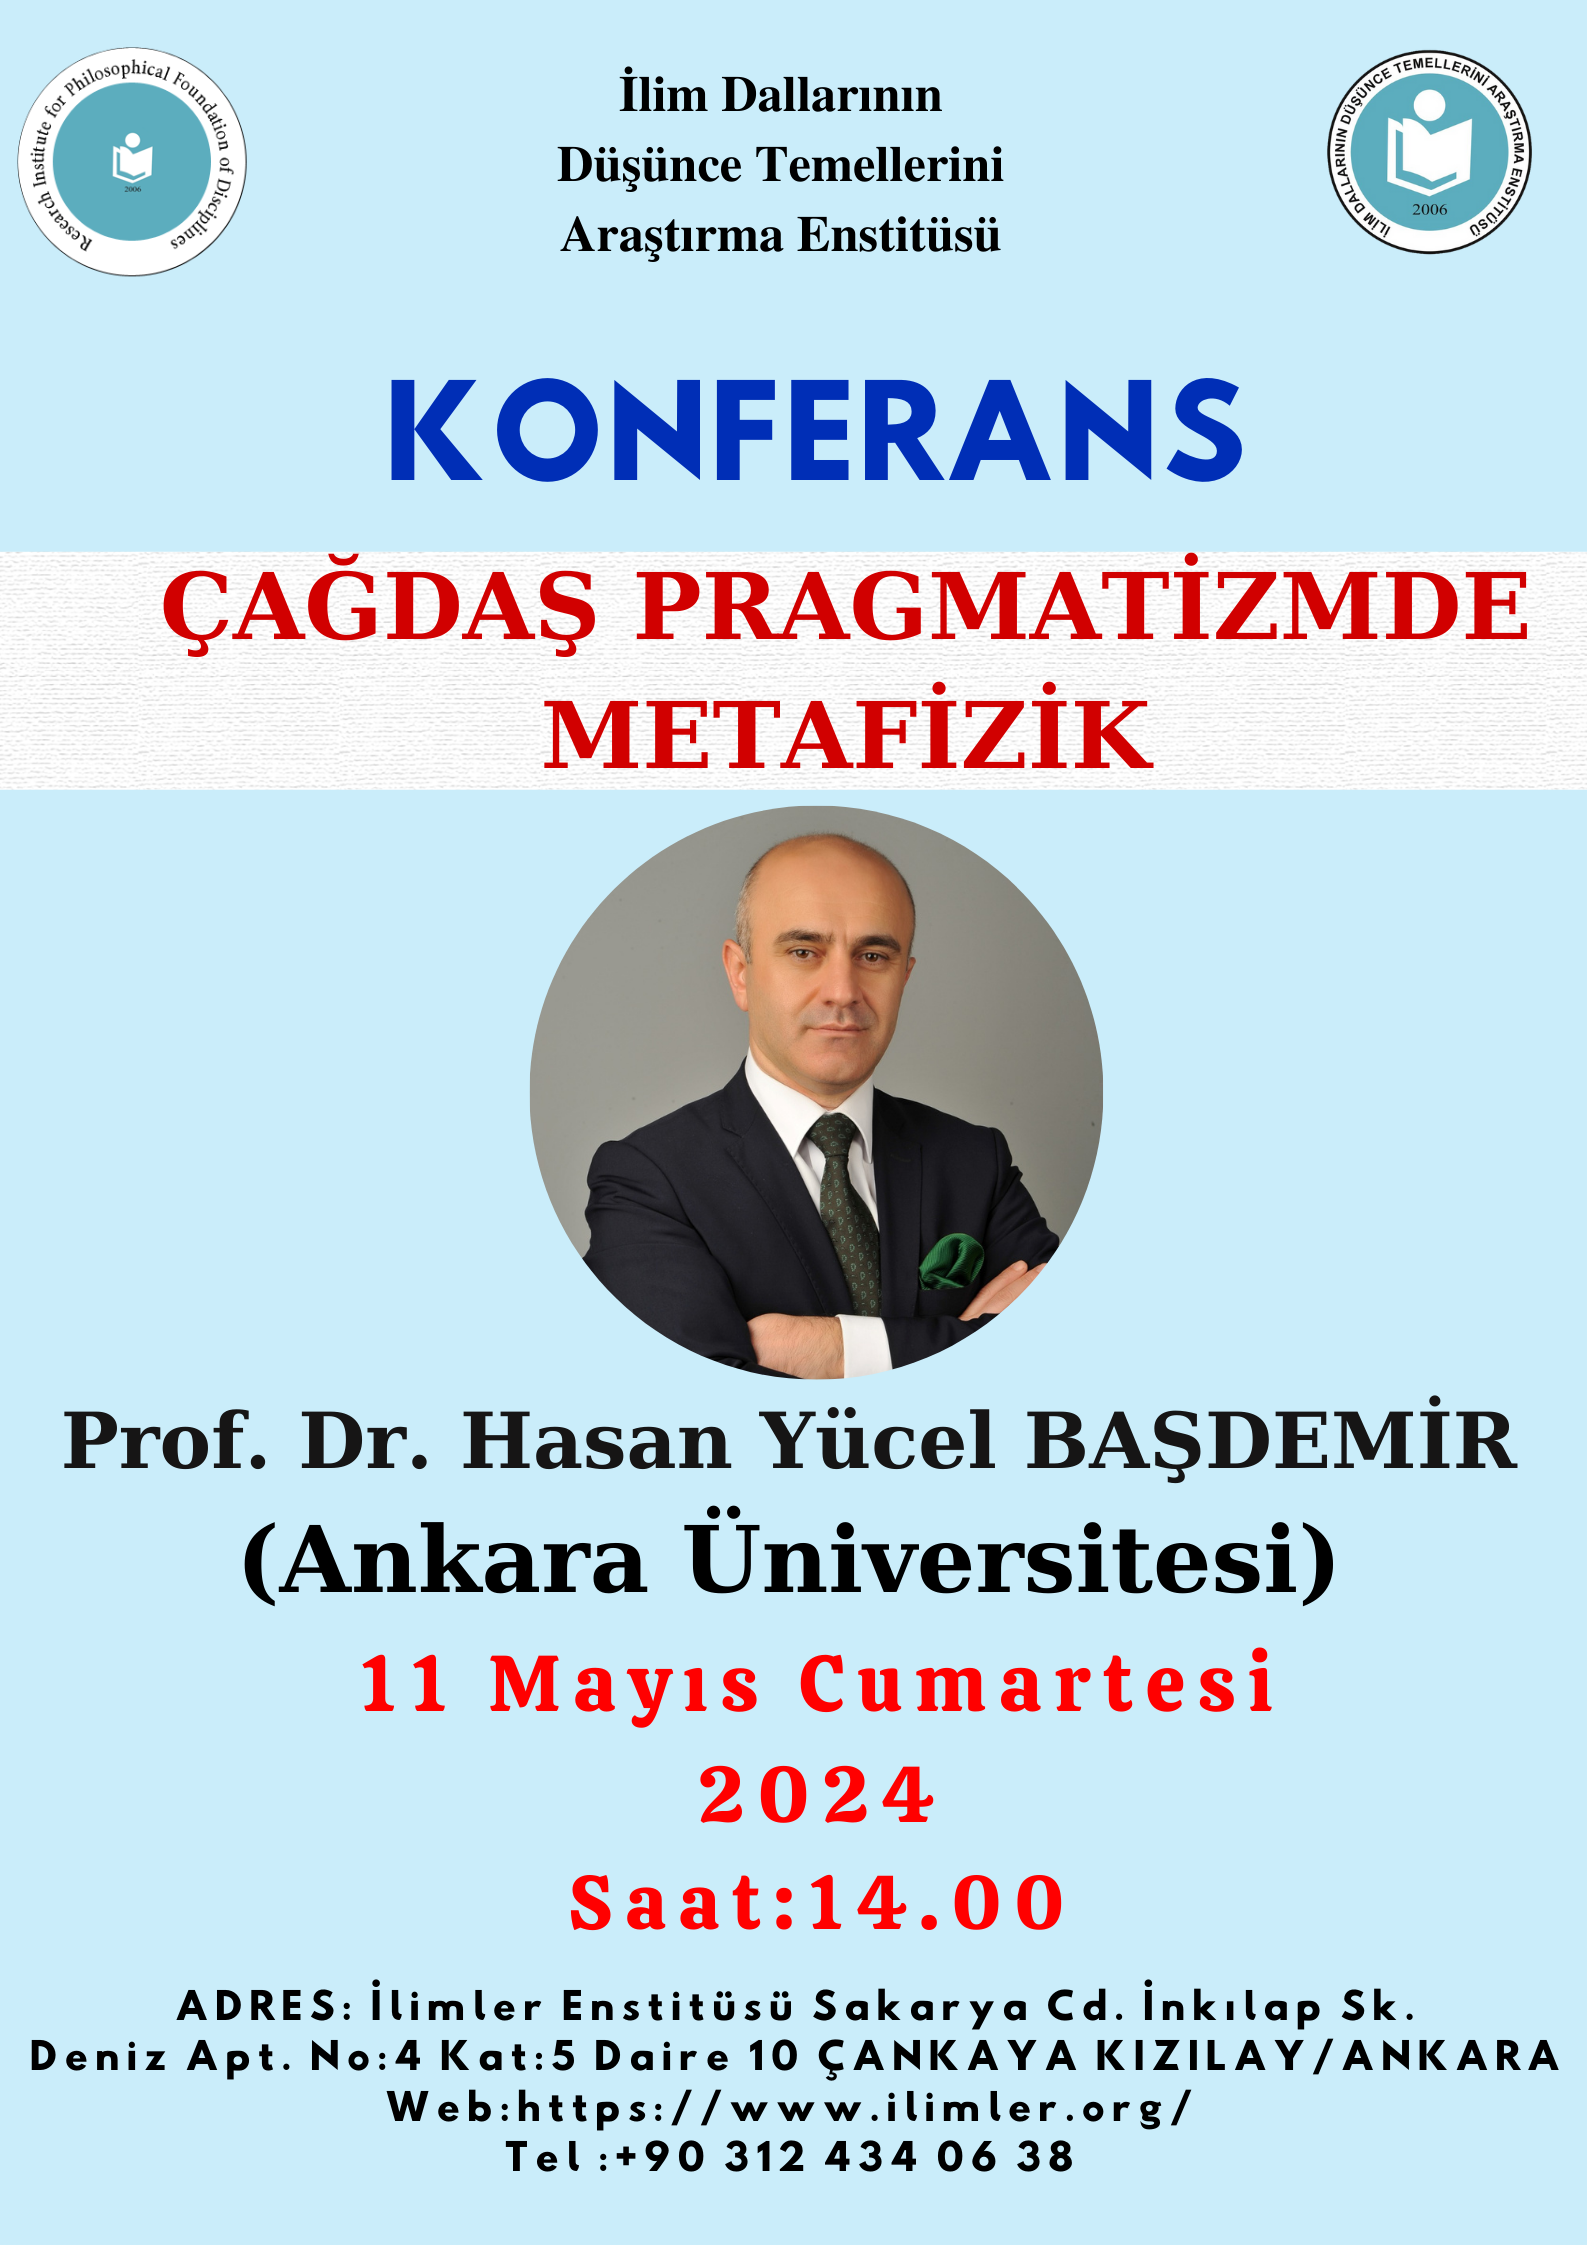 Çağdaş Pragmatizmde Metafizik -Prof. Dr. Hasan Yücel BAŞDEMİR- 11.05.2024